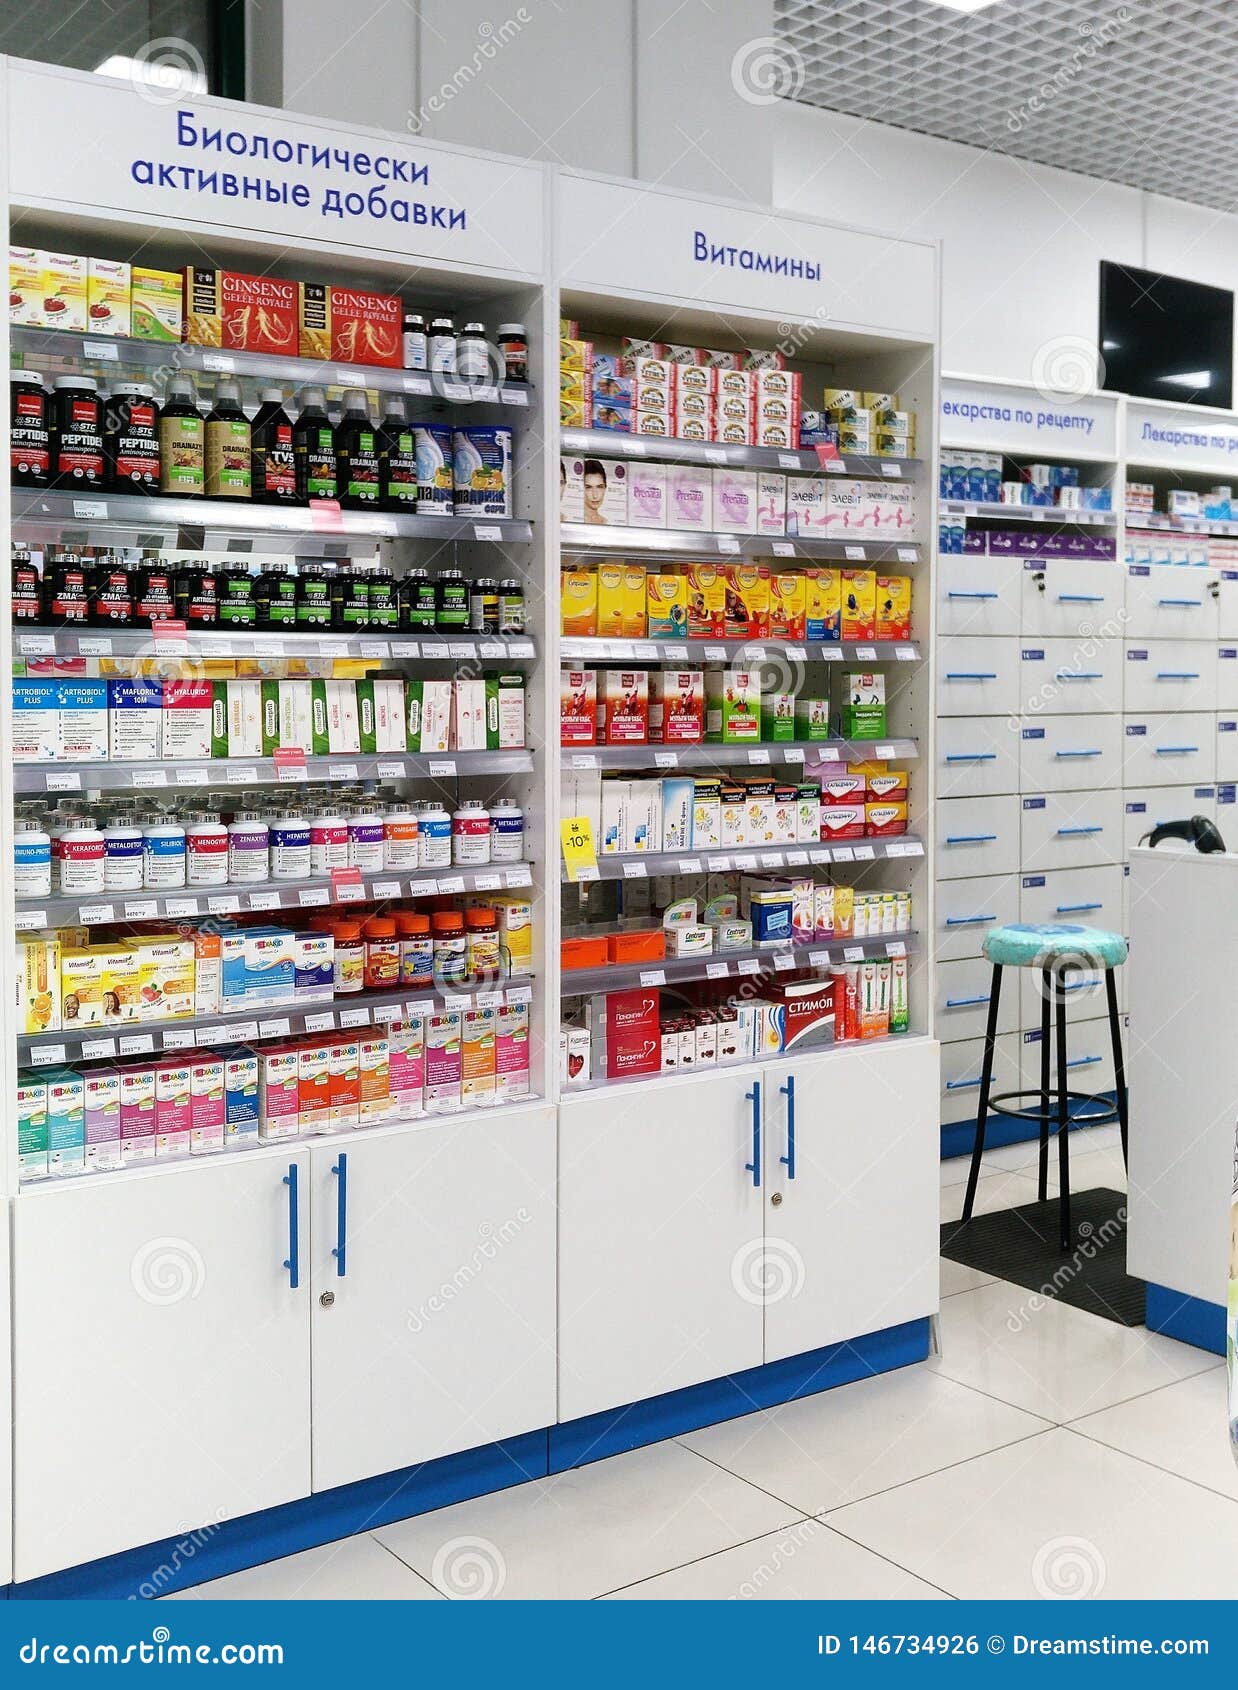 Μόσχα, Ρωσία 5 Μαΐου 2019: Φαρμακείο, κείμενο στα ράφια: Διαιτητικά συμπληρώματα, βιταμίνες, ιατρικές συνταγές. Η σειρά των φαρμακείων, τα διάφορα συμπληρώματα, οι βιταμίνες, τα κιβώτια και τα μπουκάλια των φαρμάκων σχεδιάζονται στα ράφια της προθήκης Άσπρο ντουλάπι με τις πόρτες, επτά ράφια